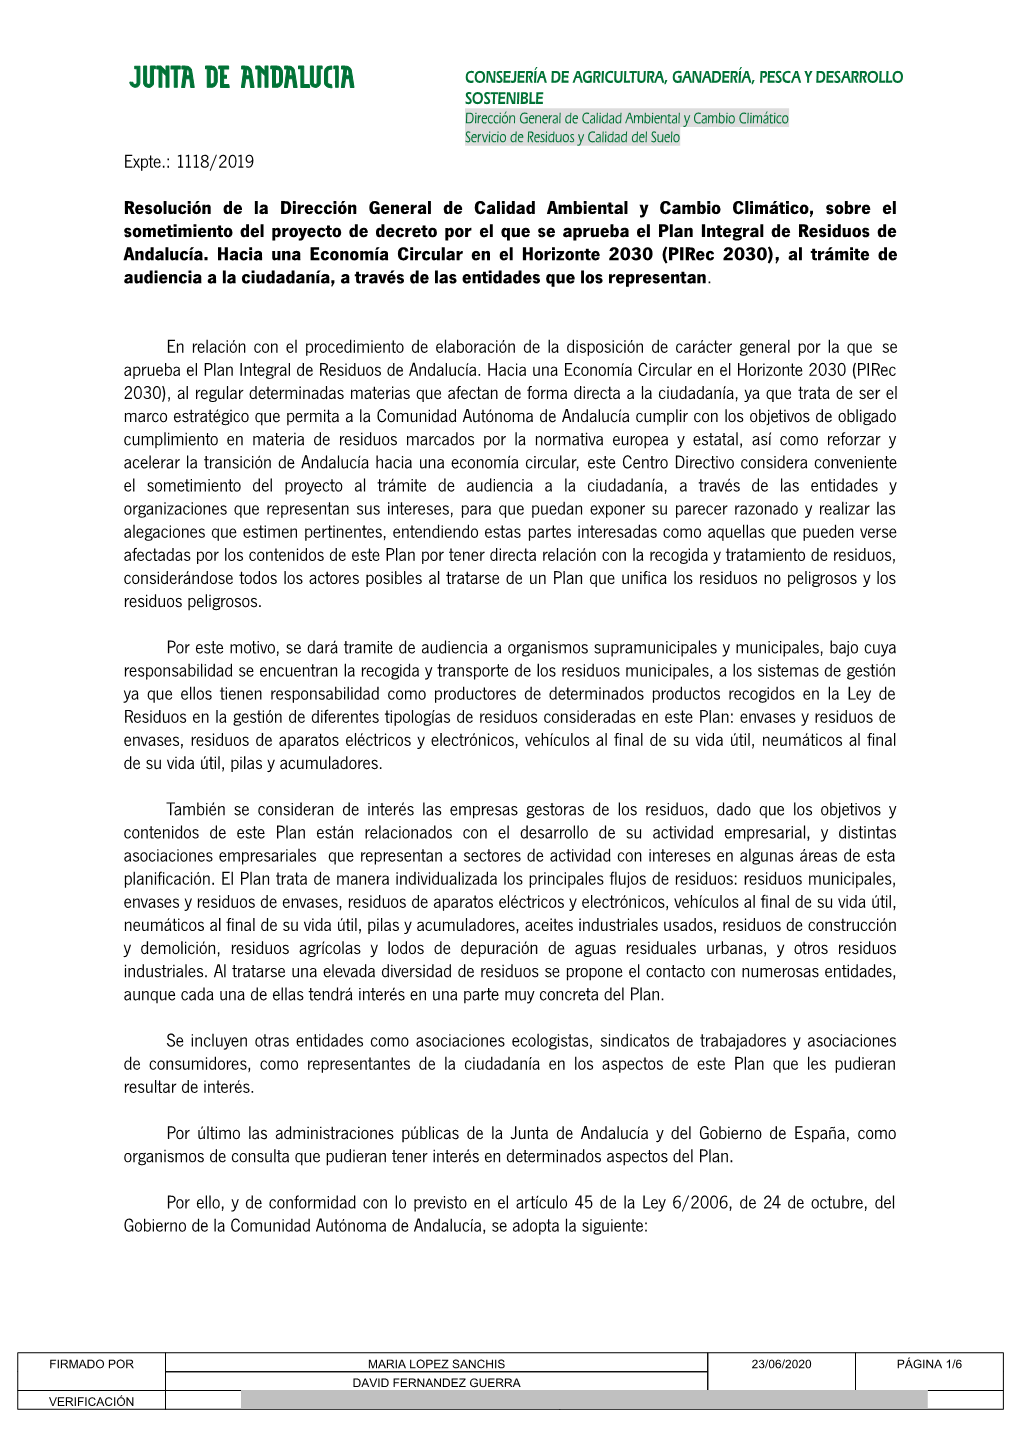 1118/2019 Resolución De La Dirección General De Calidad Ambiental Y